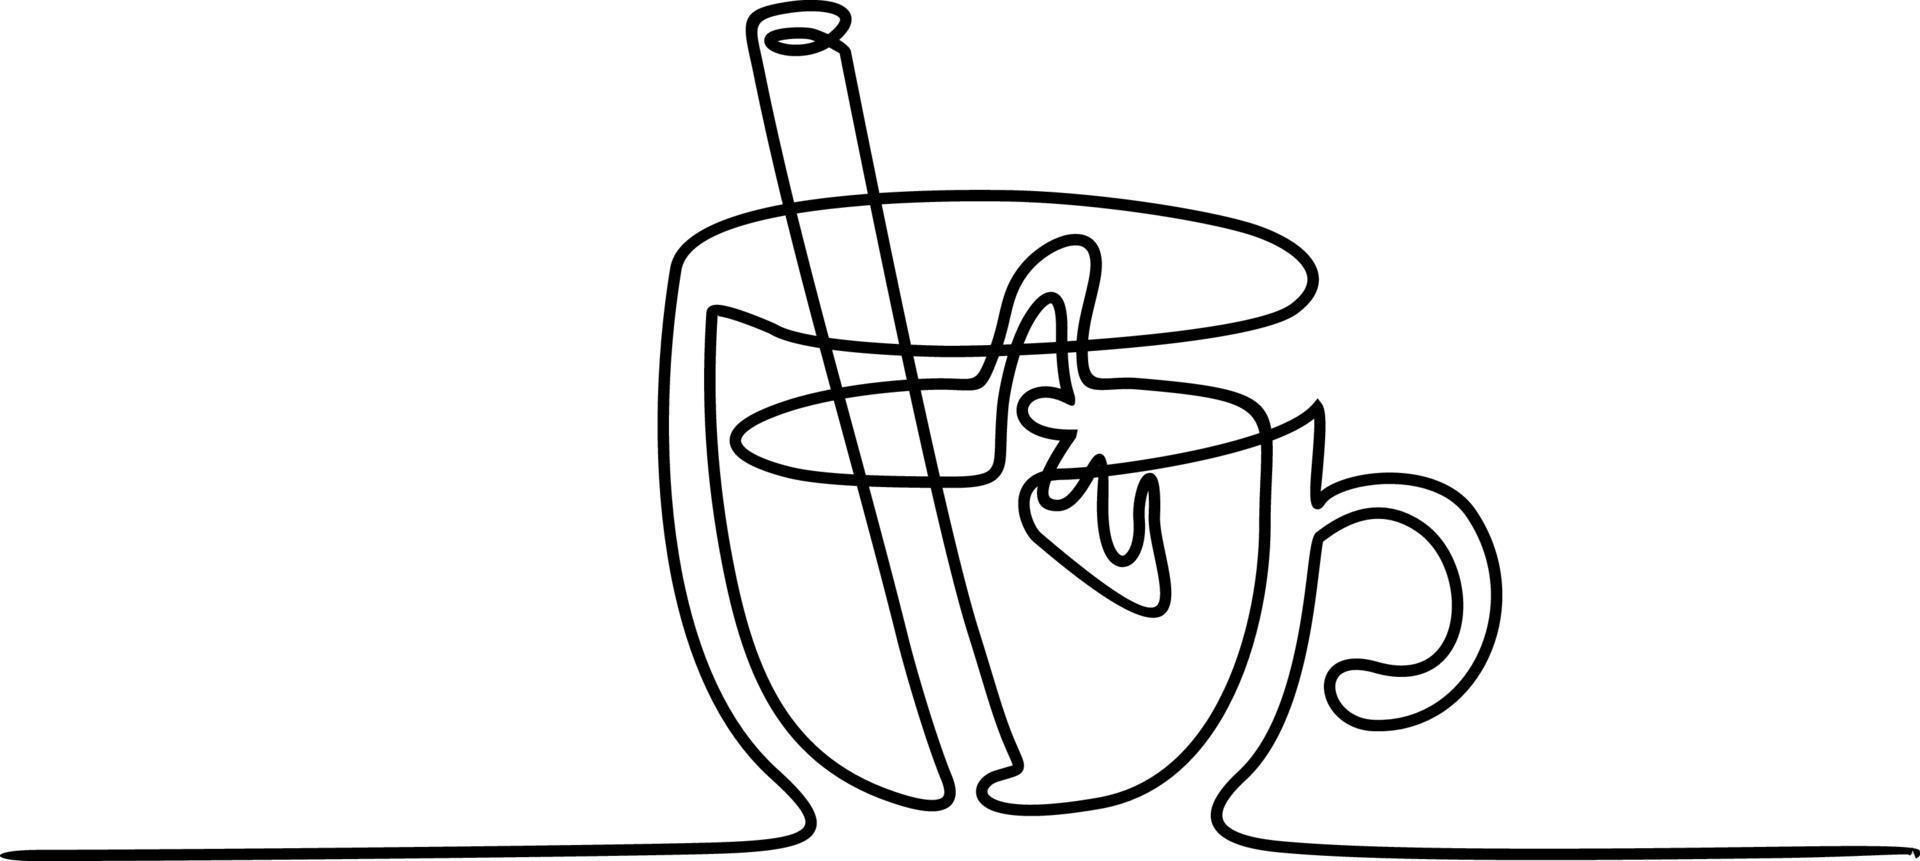 menu de boissons chaudes bannière vectorielle à une ligne, arrière-plan avec doodle de vin chaud. illustration d'art en ligne unique avec des boissons chaudes. vin chaud, grog, cidre chaud. vecteur